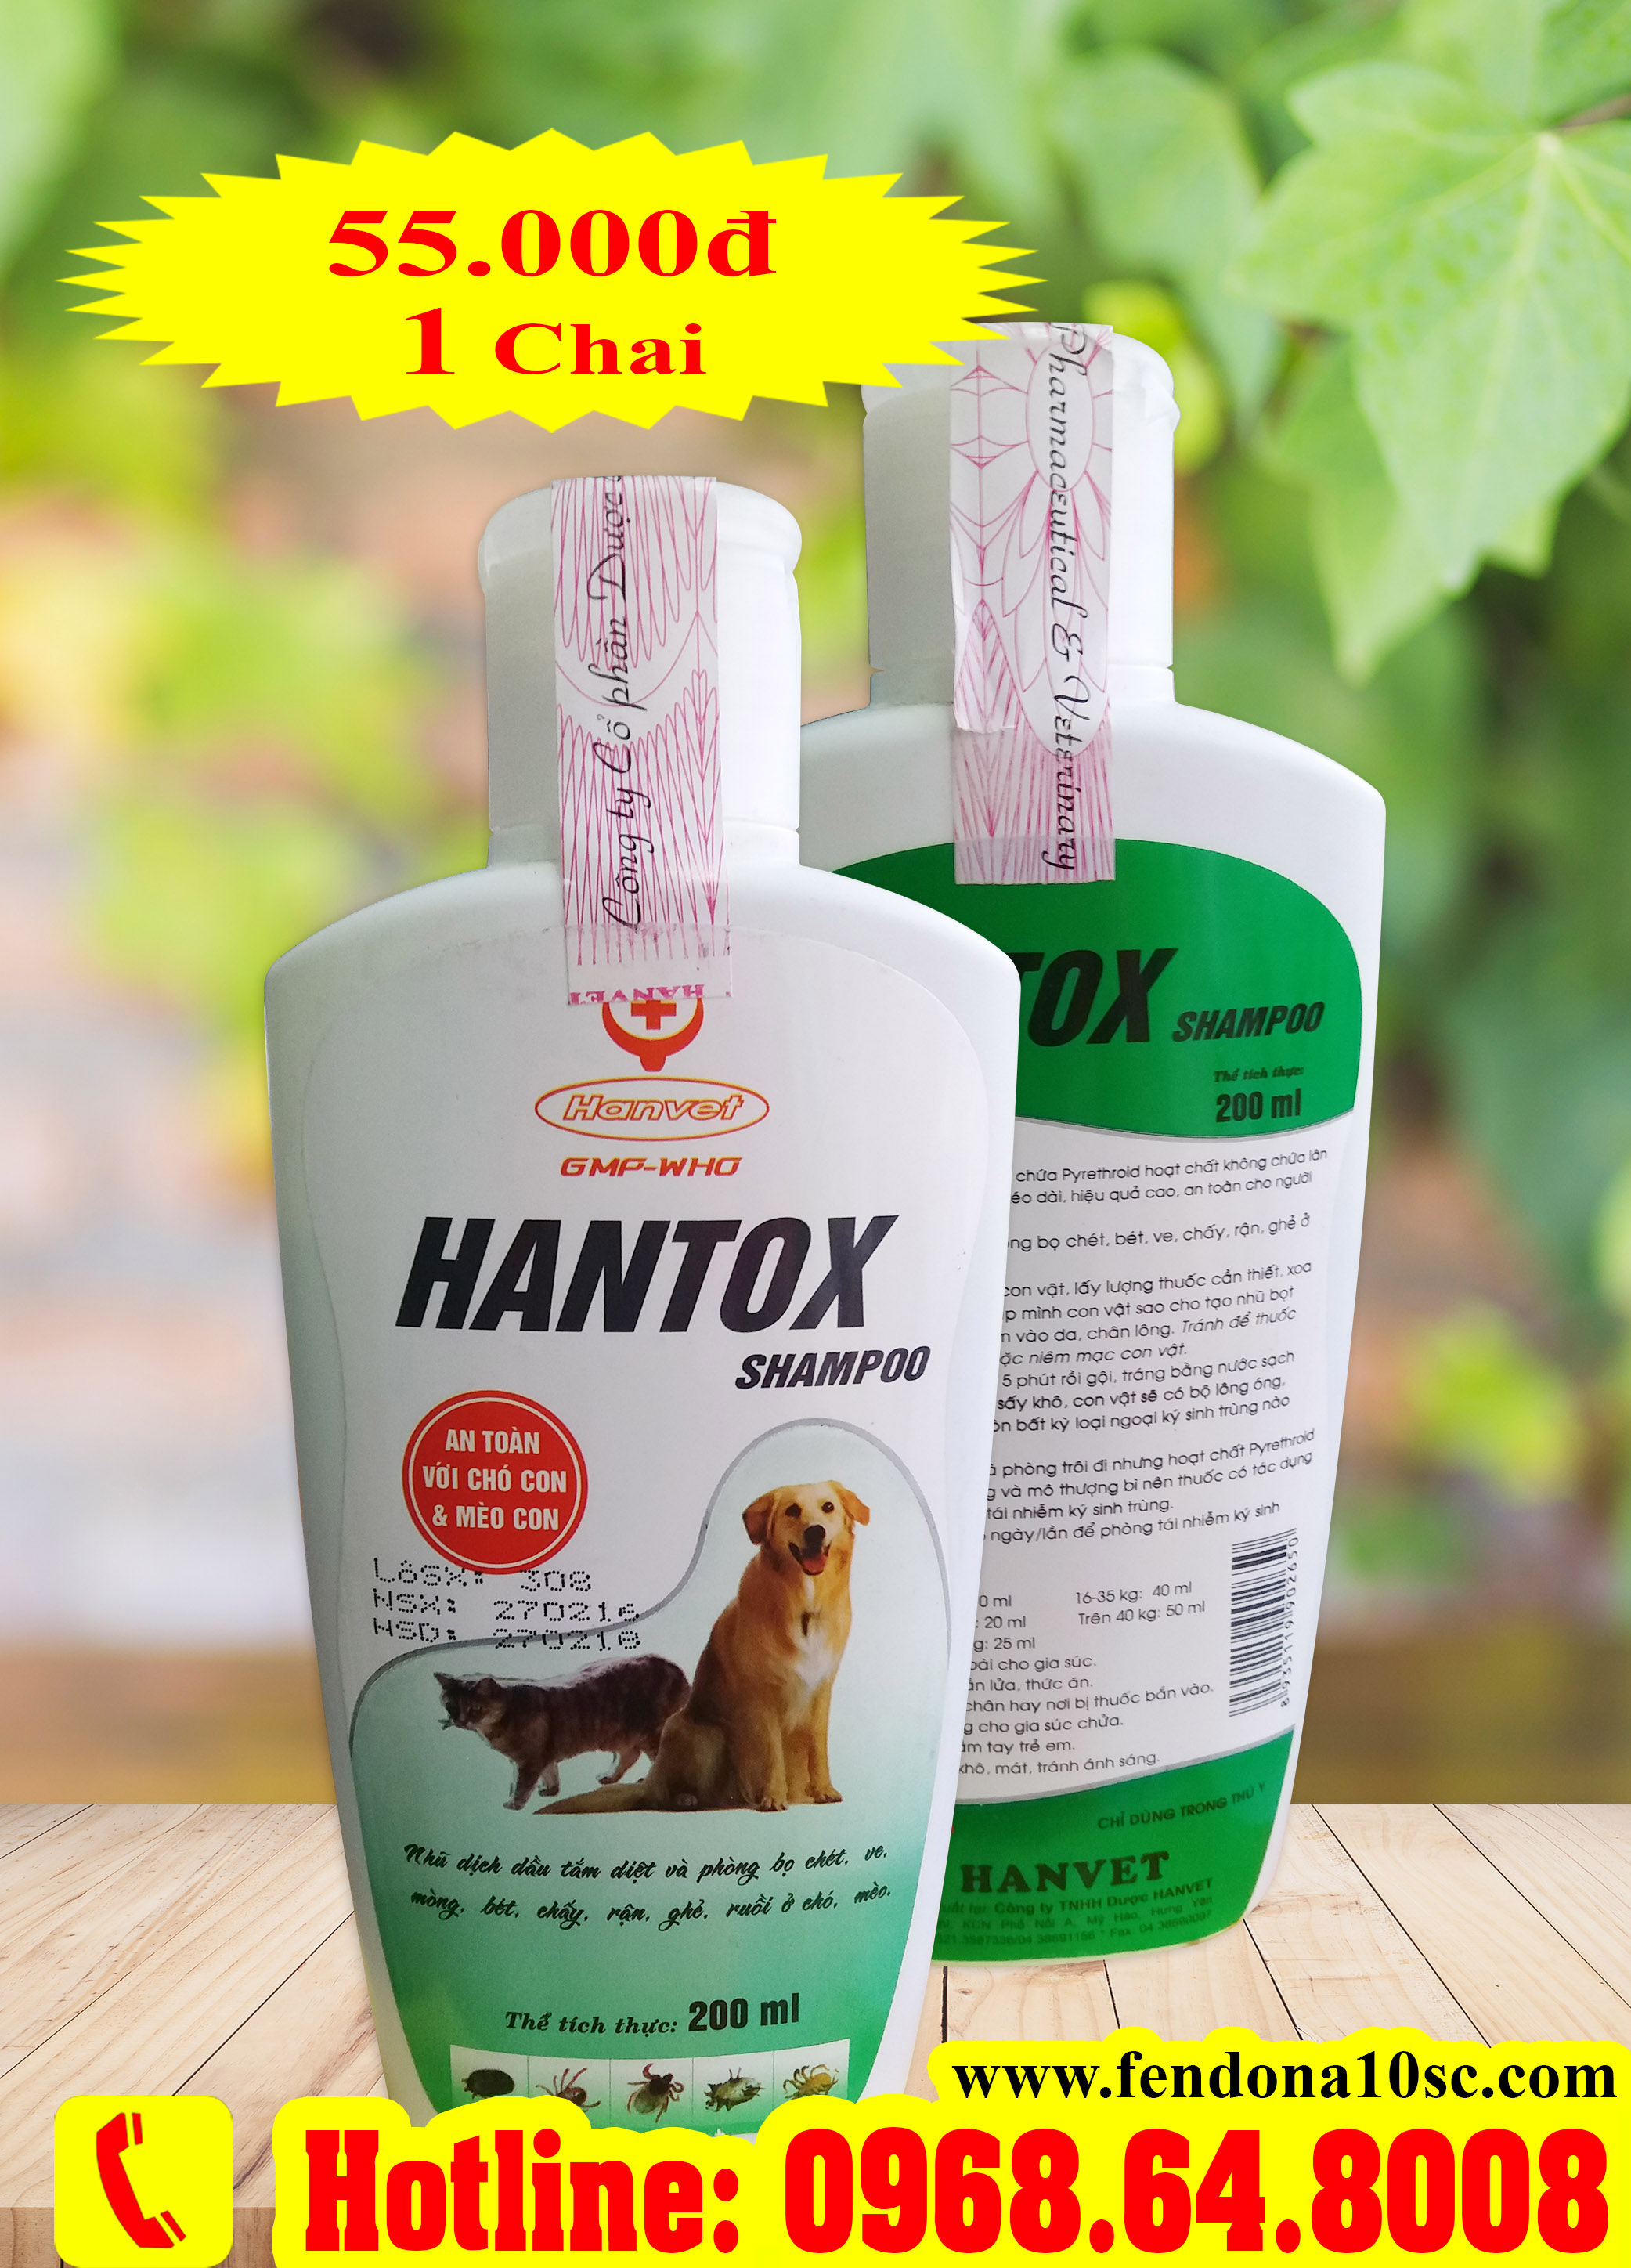 Hantox Shampoo (200ml) - Chai xanh( SX tại VIỆT NAM) - Sữa tắm diệt côn trùng, ve rận, bọ chét cho chó mèo...